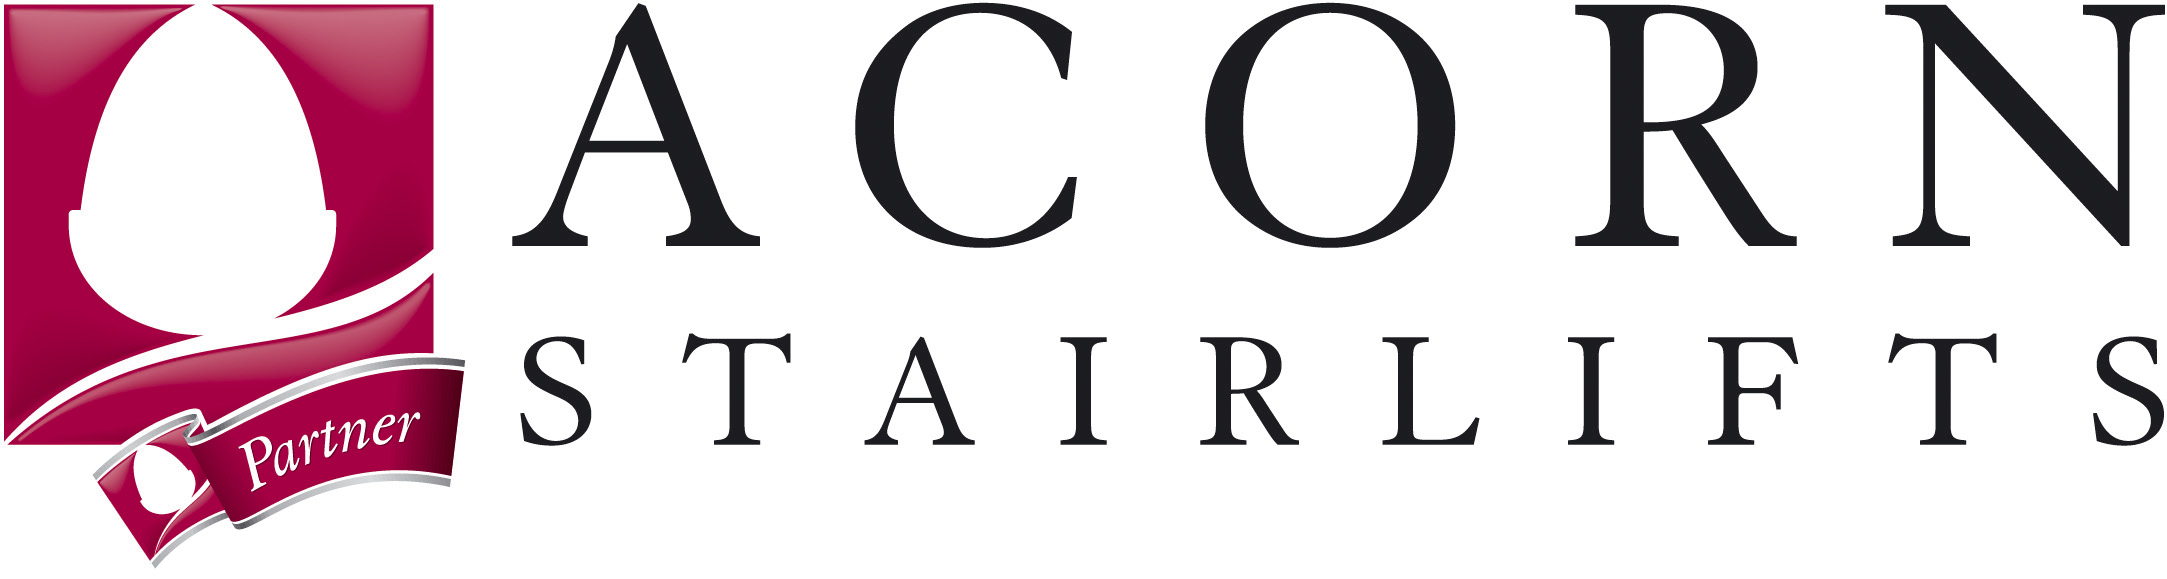 ACORN-Partner-Logo.jpg